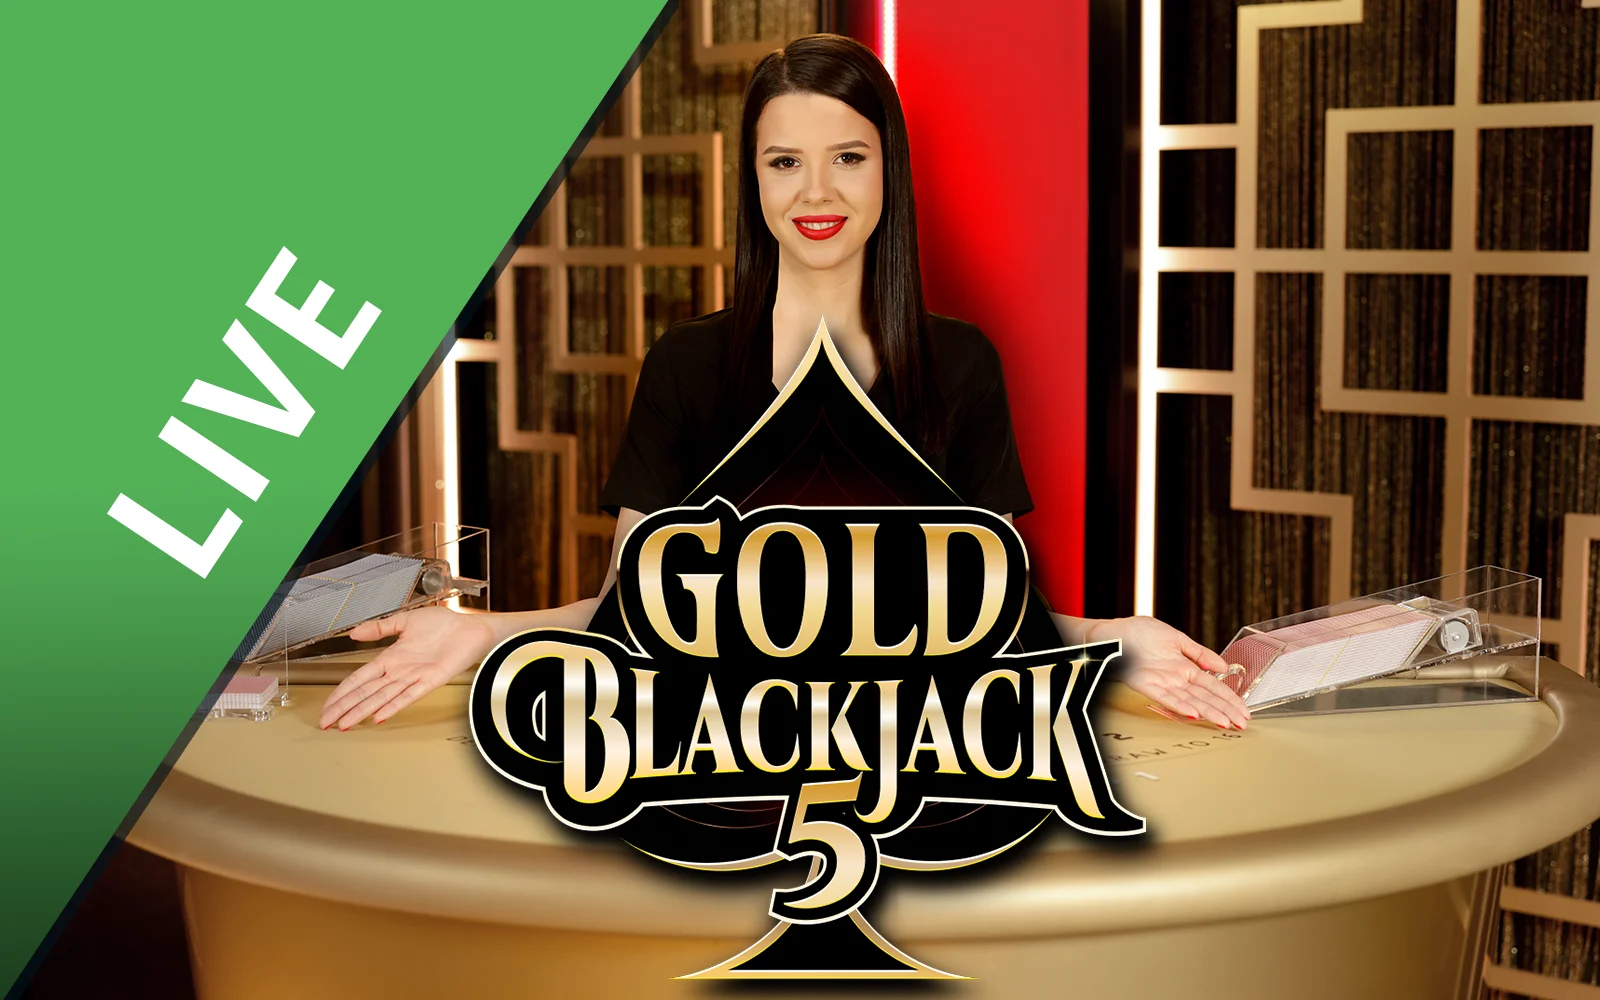 Gioca a Gold Blackjack 5 sul casino online Starcasino.be